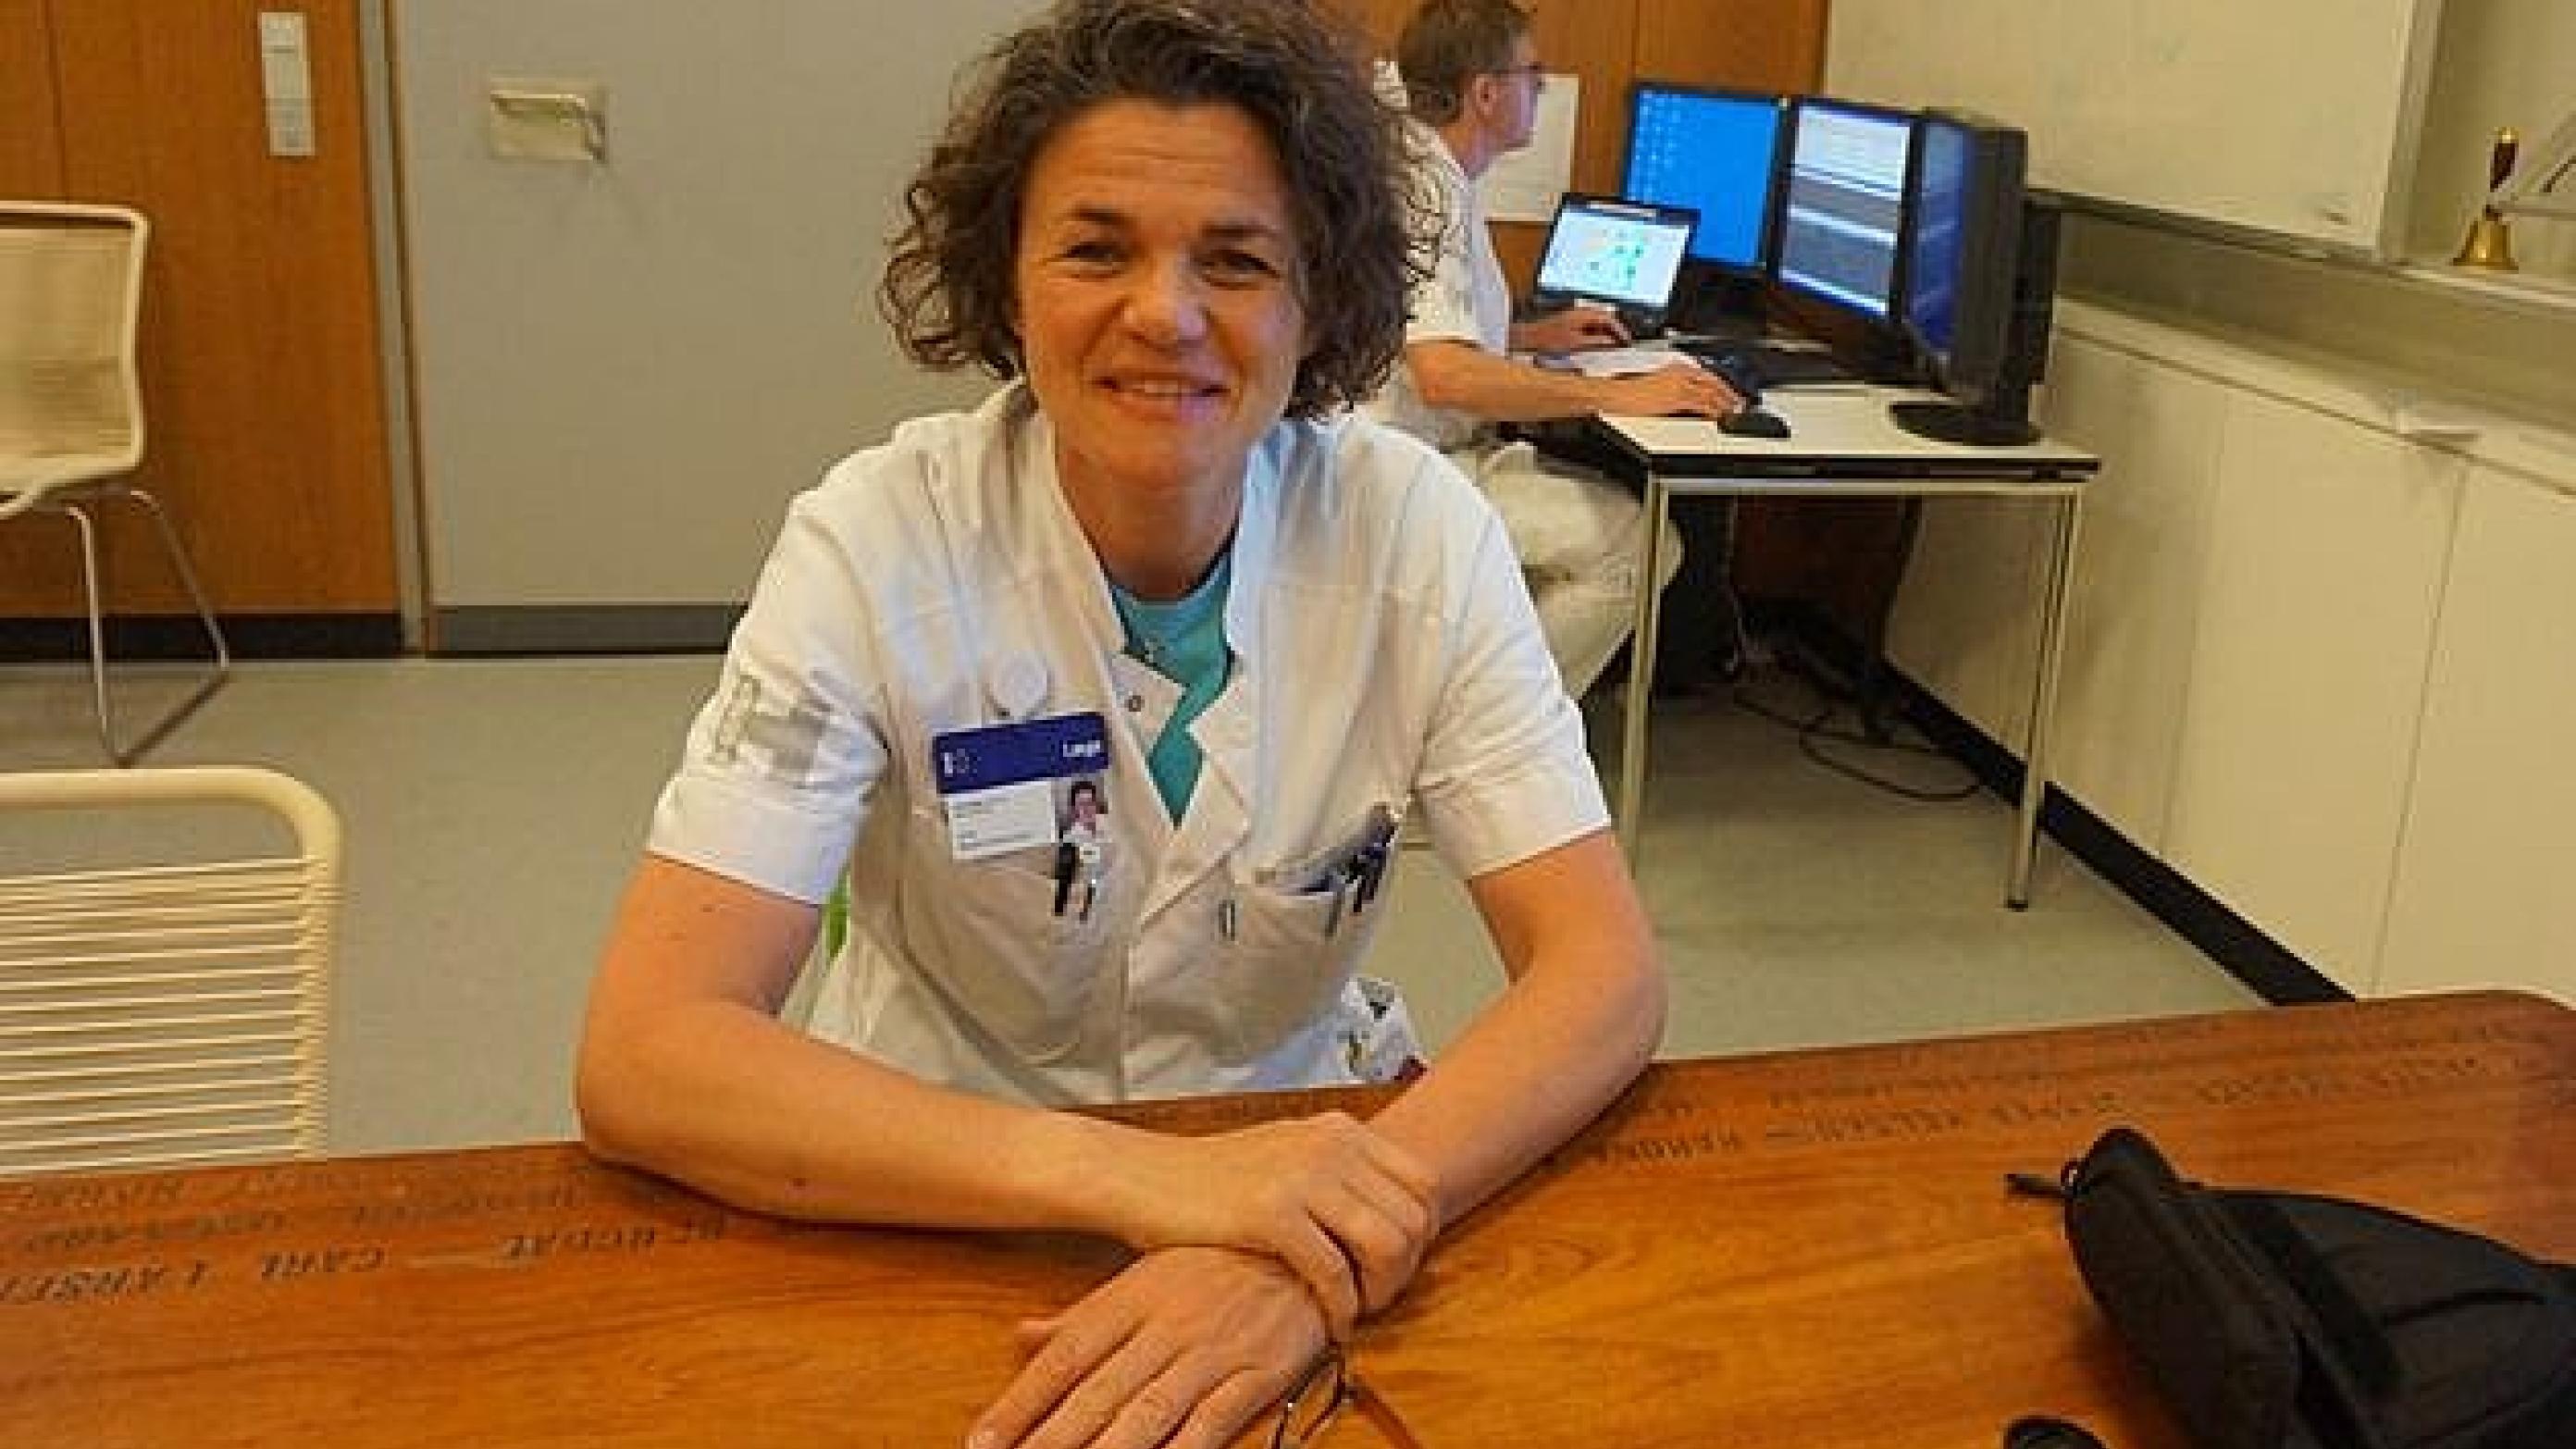 Overlæge Jane Skjøth-Rasmussen ved konferencebordet, der er lavet af en planke fra hospitalsskibet "Jutlandia". Privat foto.